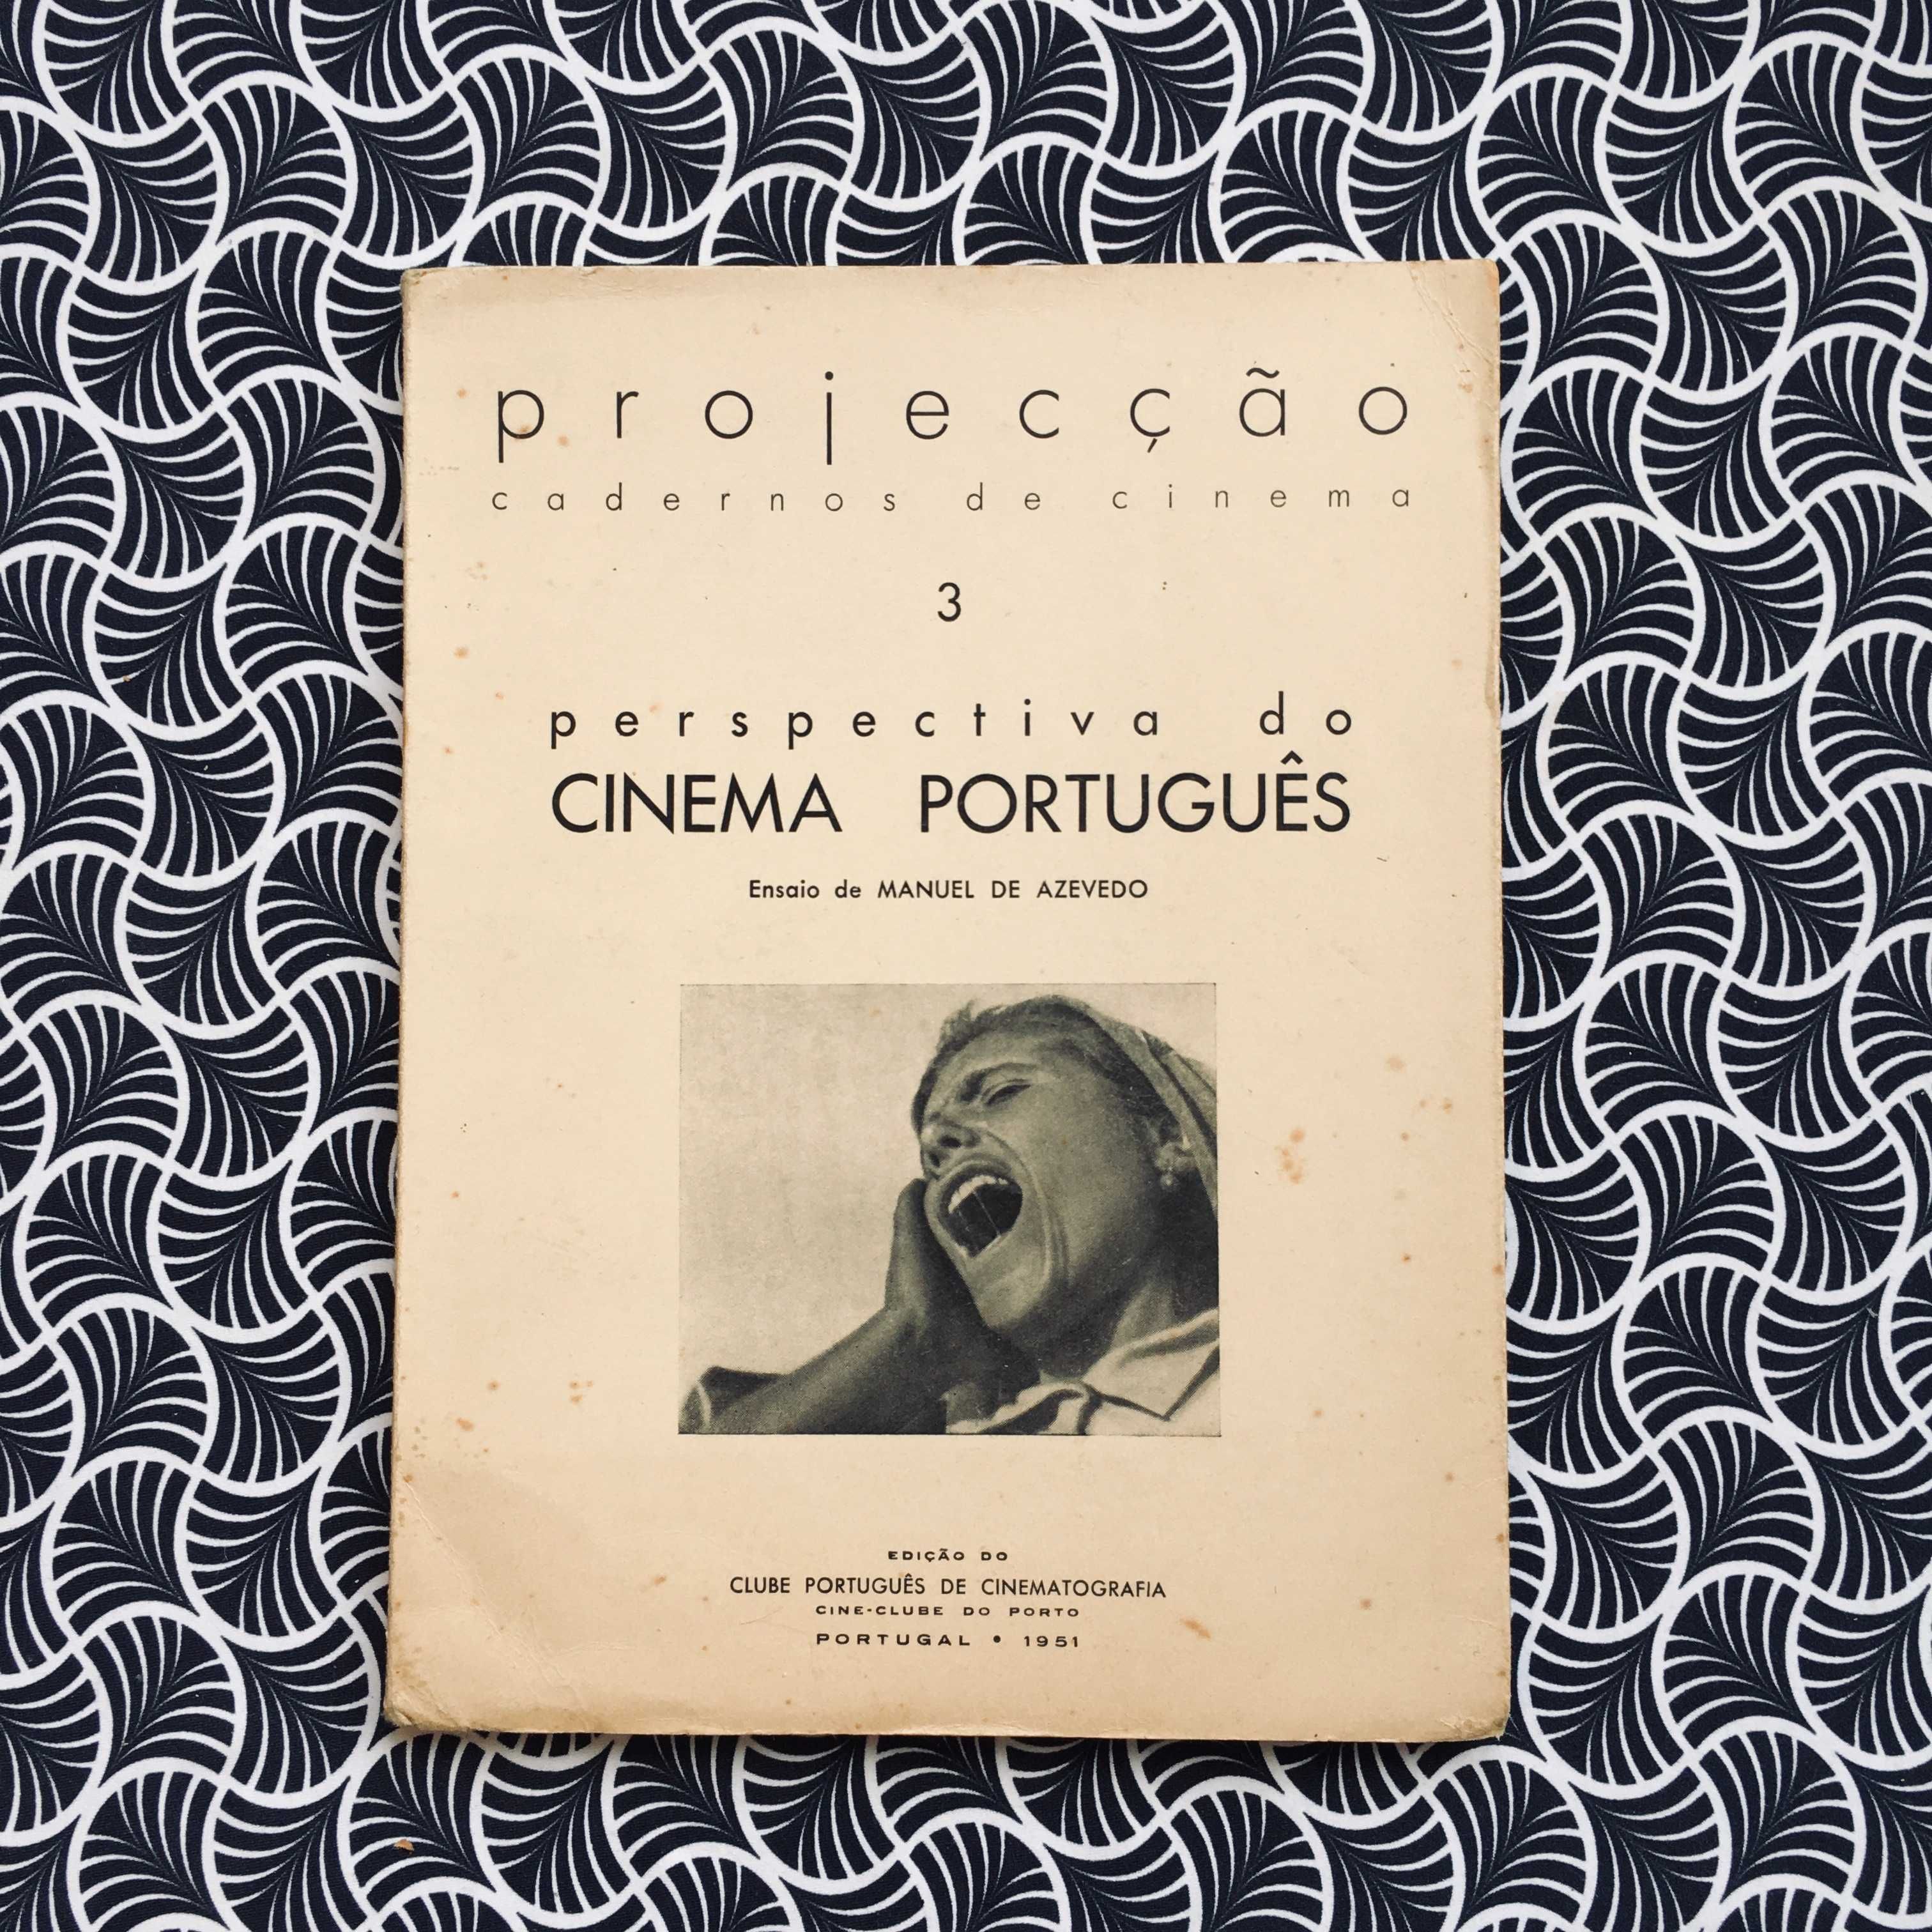 Projecção Cadernos de Cinema 3 - Perspectiva do Cinema Português